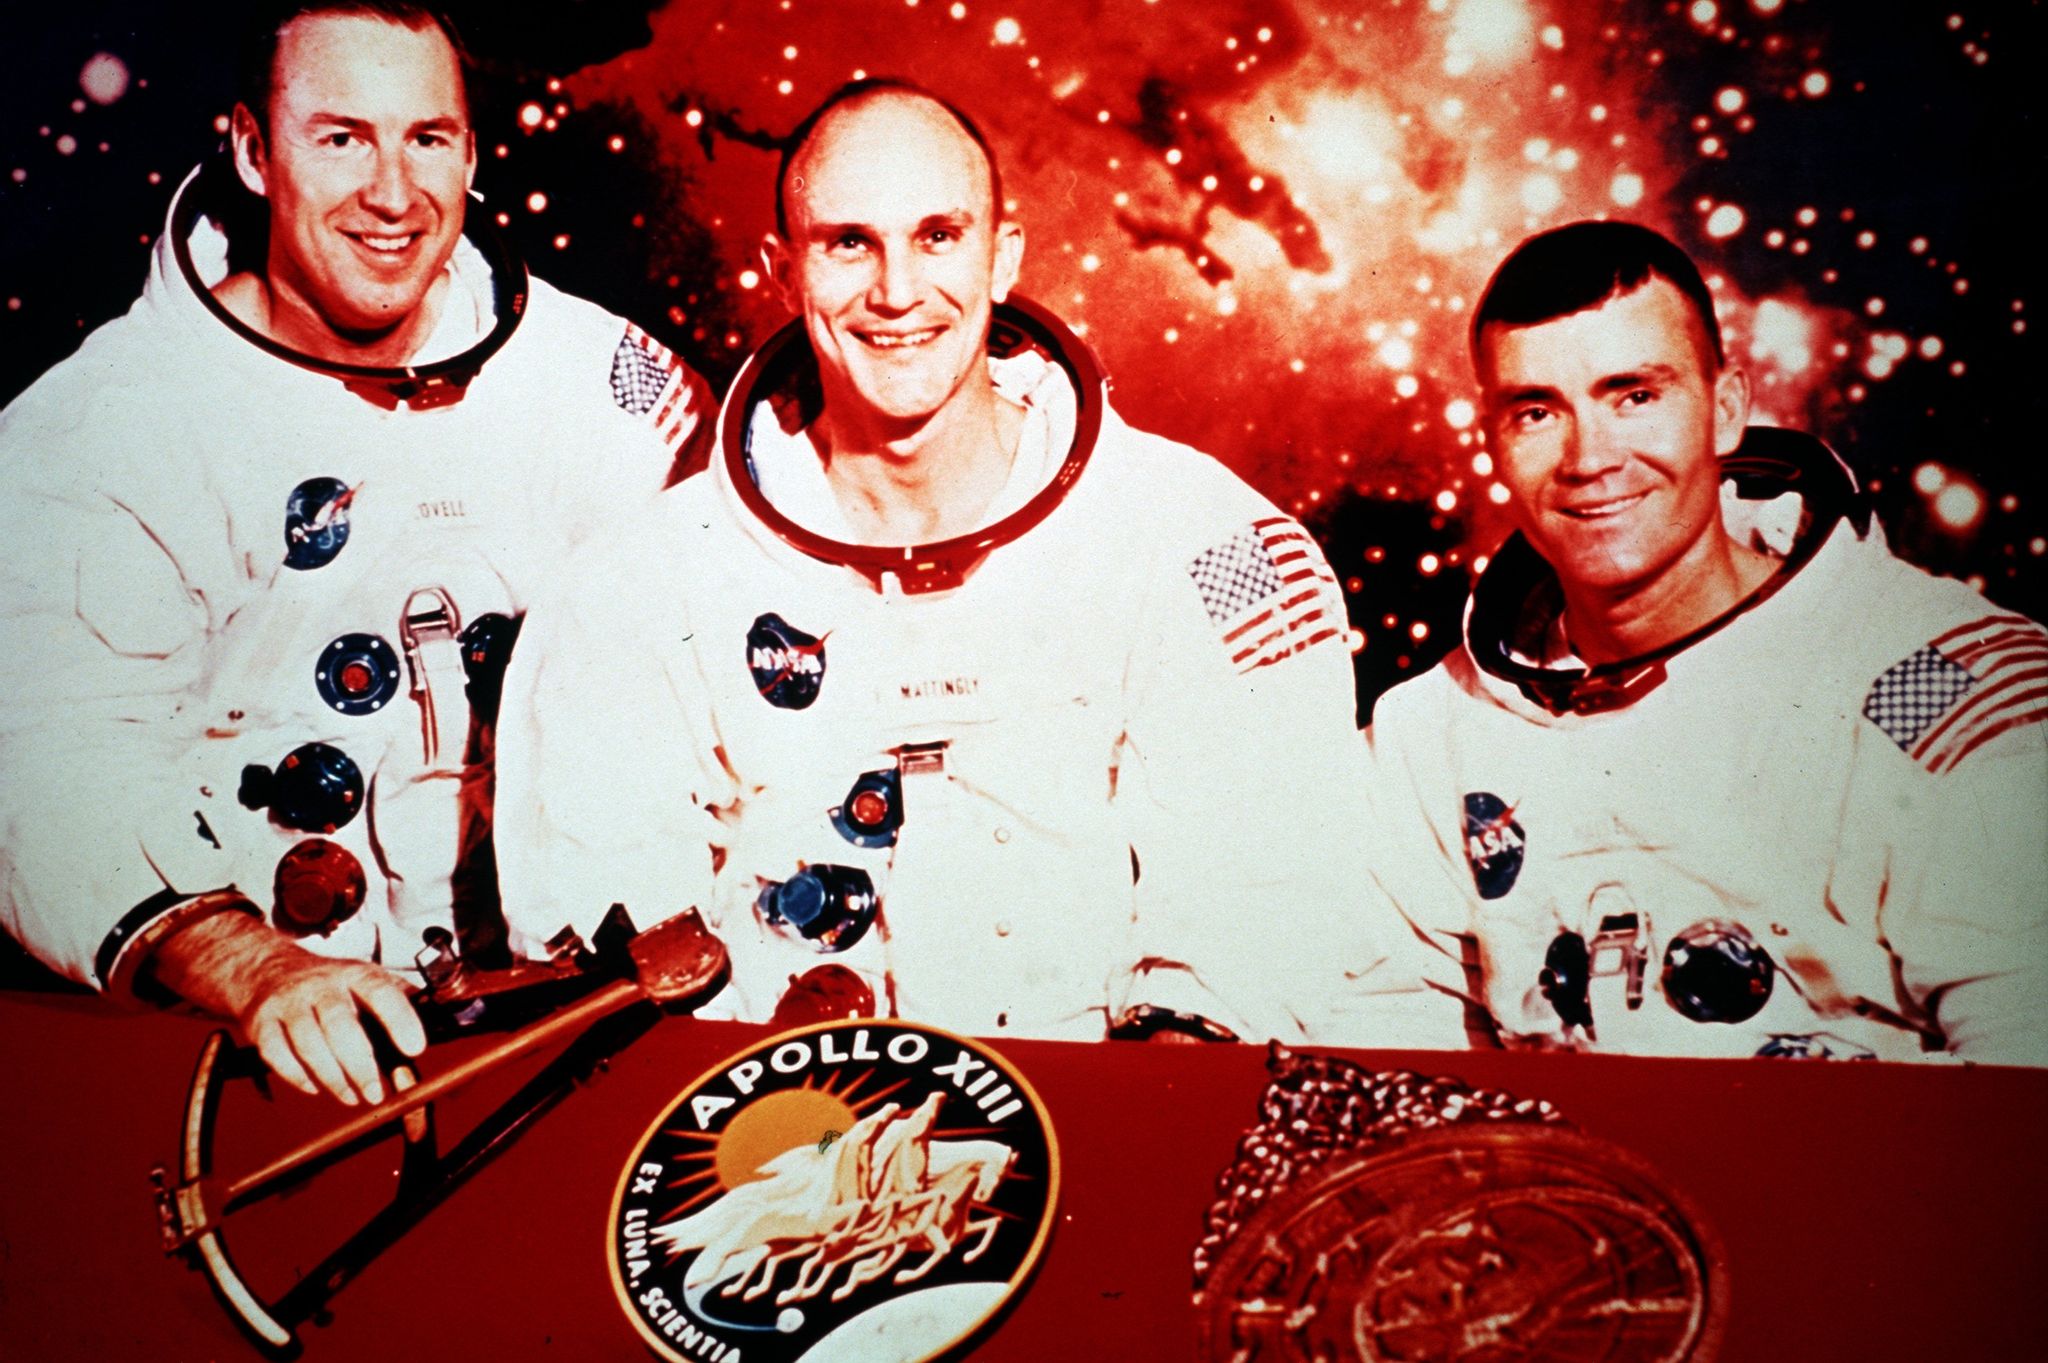 Ursprünglich sollten v.l. Jim Lovell, Thomas Mattingly und Fred Haise mit der Apollo 13-Kapsel fliegen. Kurz vor dem Start wurde Mattingly wegen des Verdachts auf Masern durch John Swigert ersetzt. Die Apollo 13-Mission gehört zu den spektakulärsten Abenteuern der bemannten Raumfahrt.